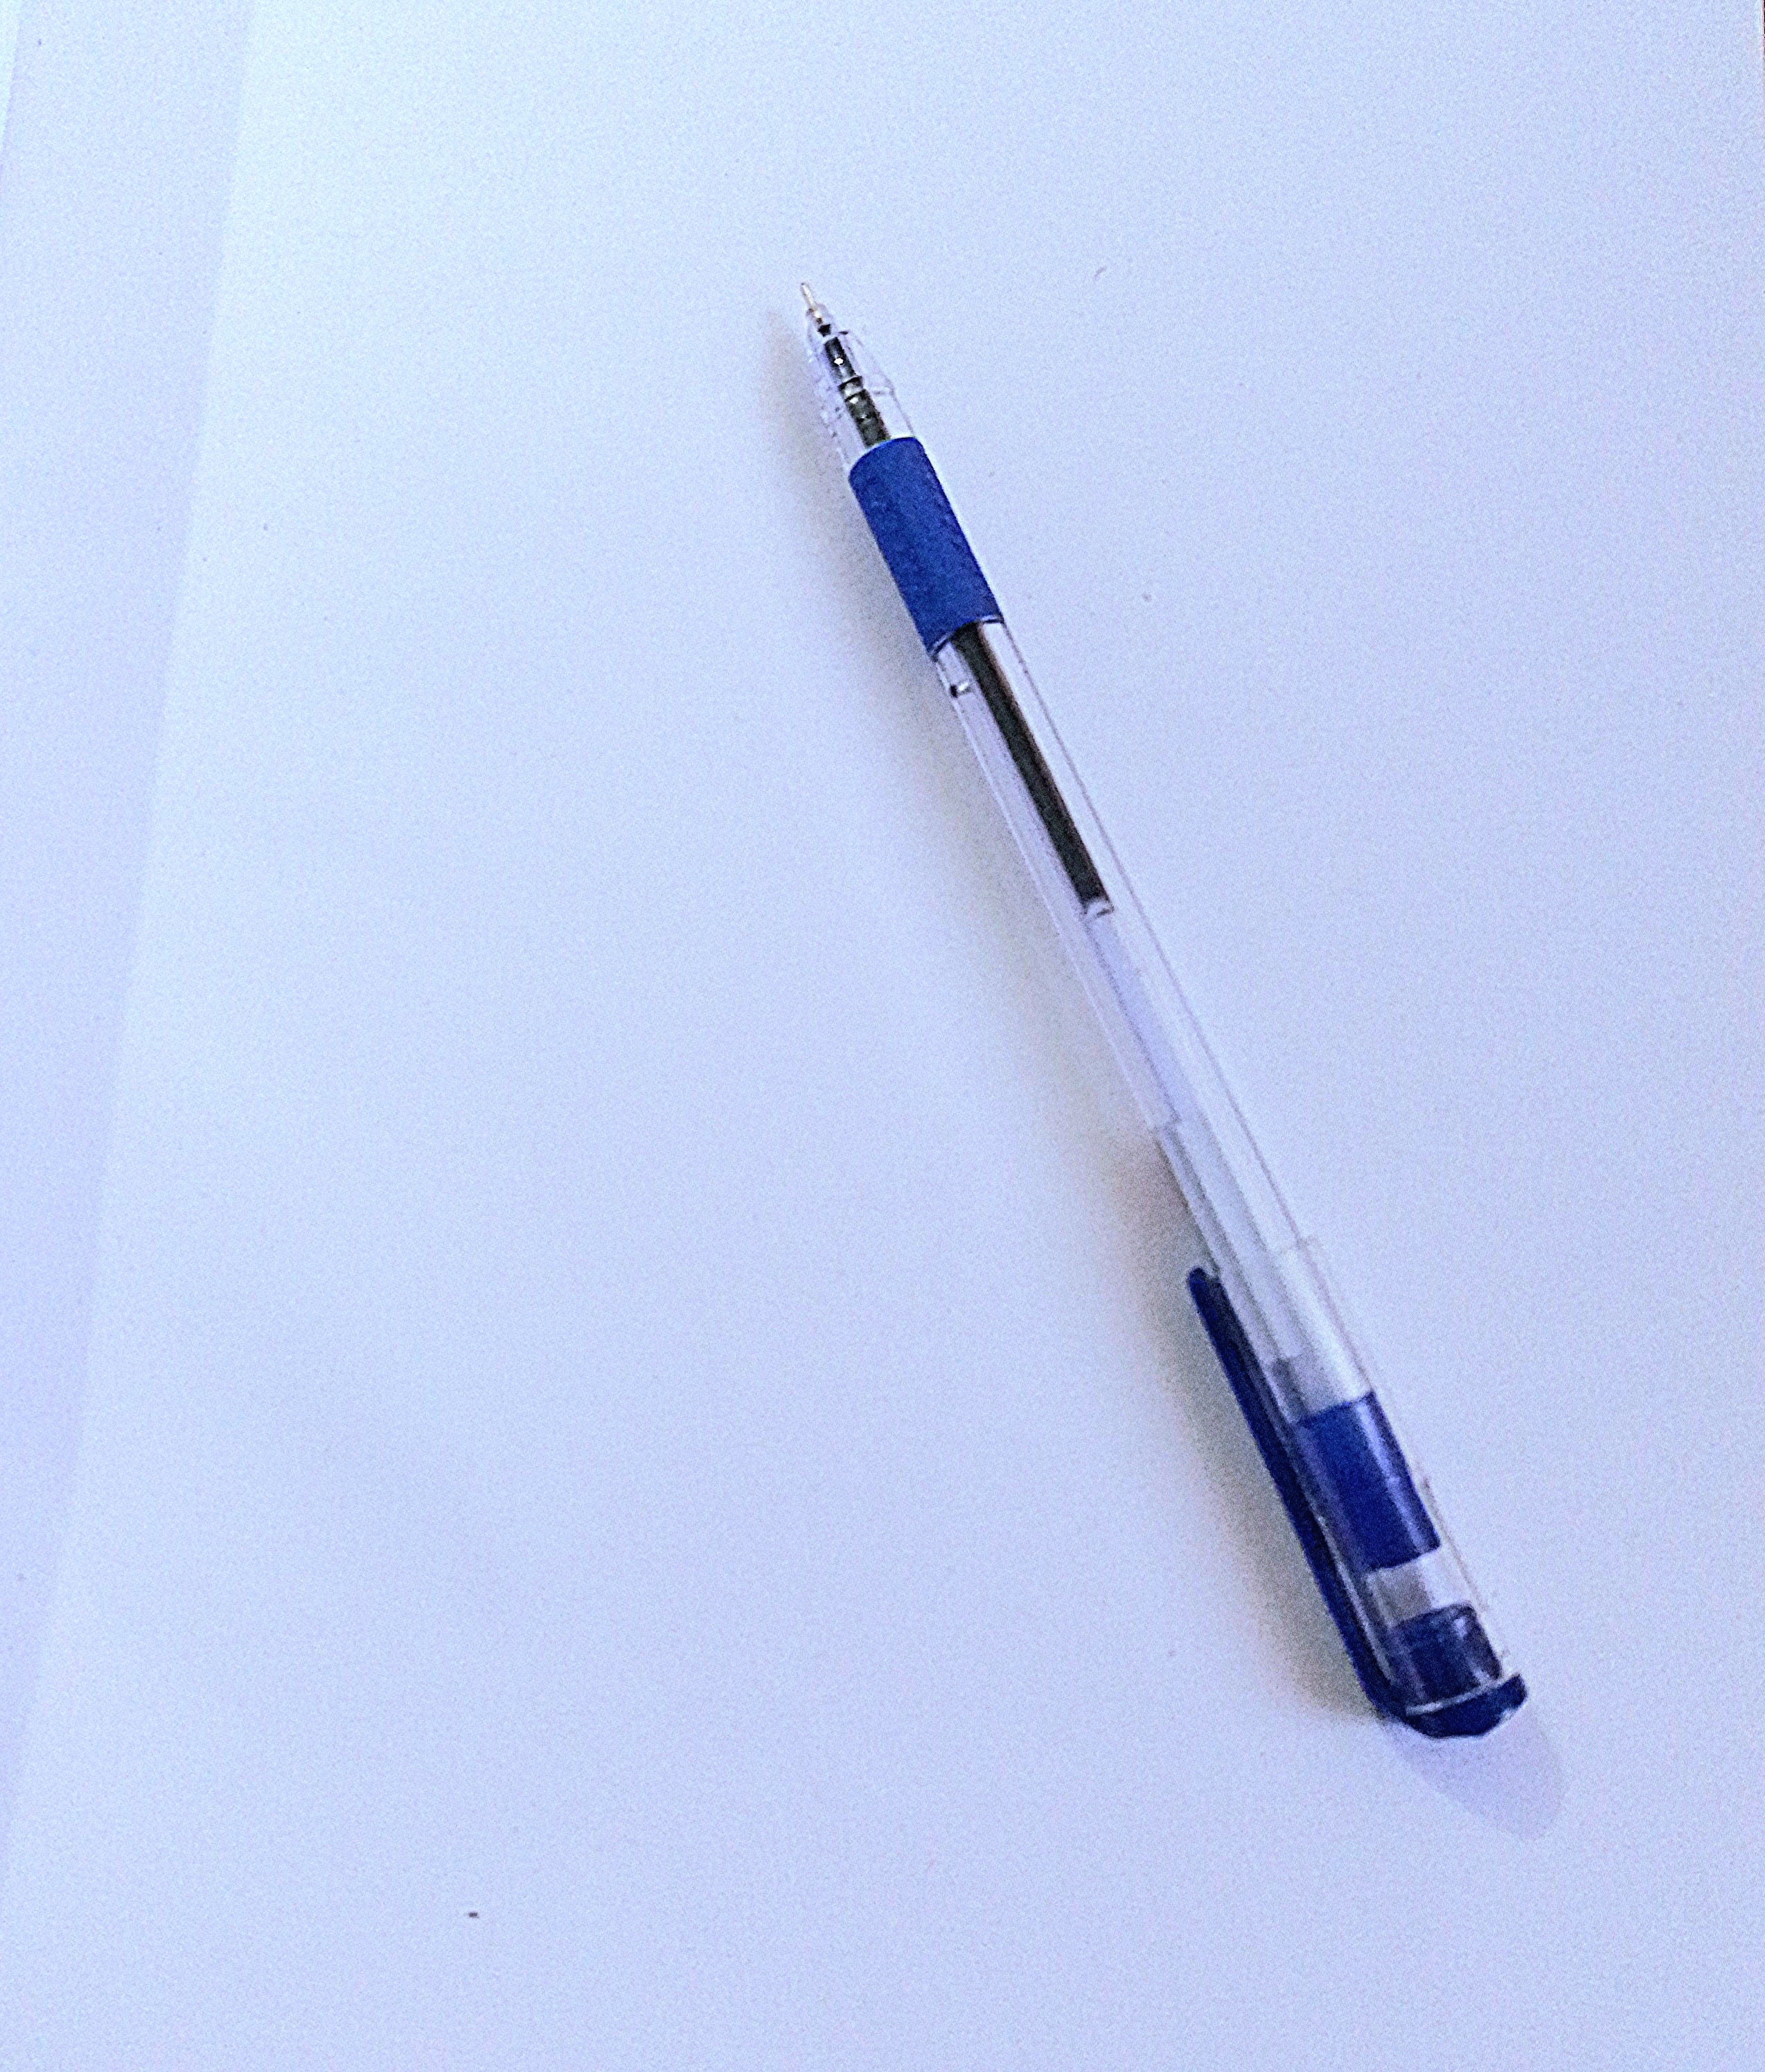 कागज और कलम's image